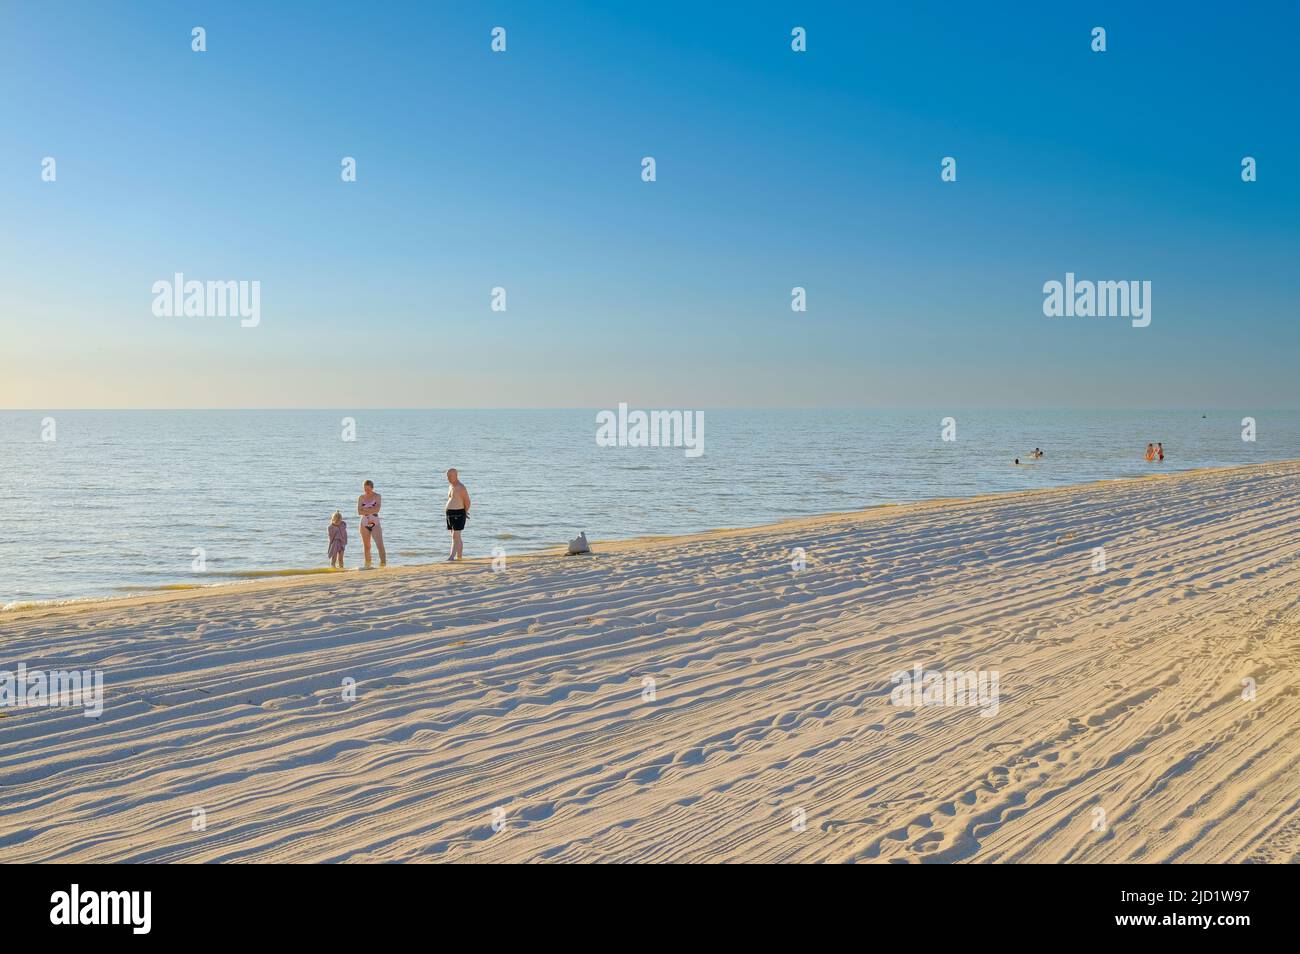 Regione di Krasnodar. Russia. Giugno 11, 2022. La gente prendisole sulla spiaggia di sabbia del mare di Azov in una giornata estiva soleggiata. Concetto di vacanza al mare. Foto Stock